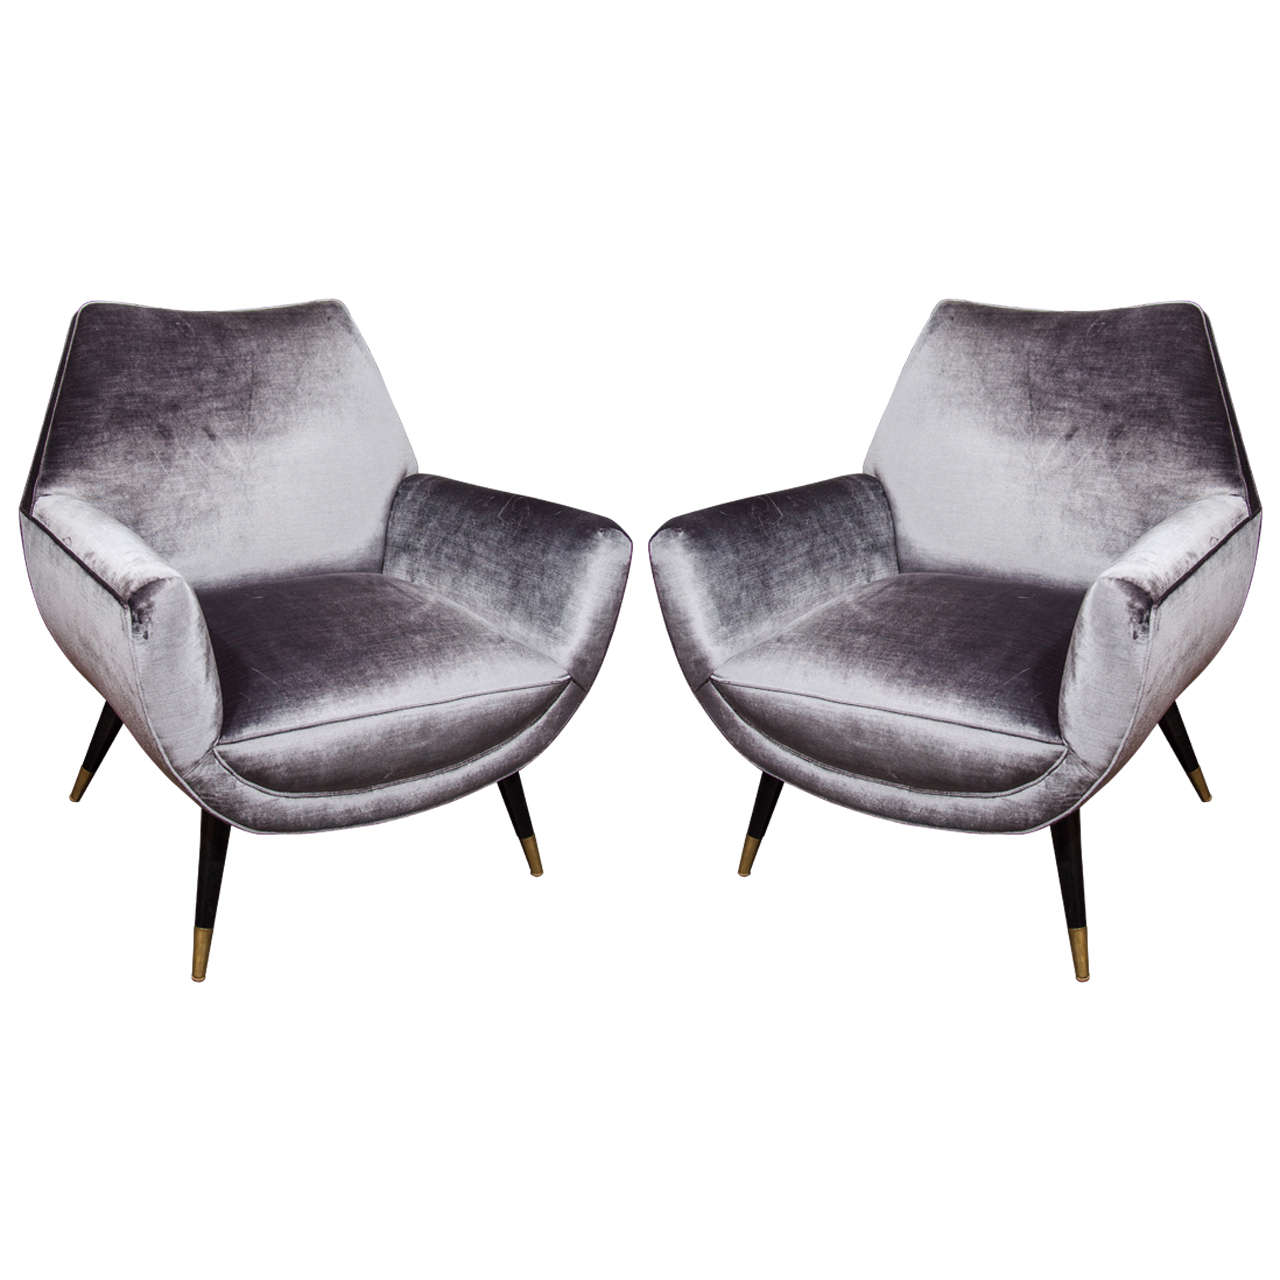 Custom Mid-Century style Armchairs upholstered in Grey Velvet